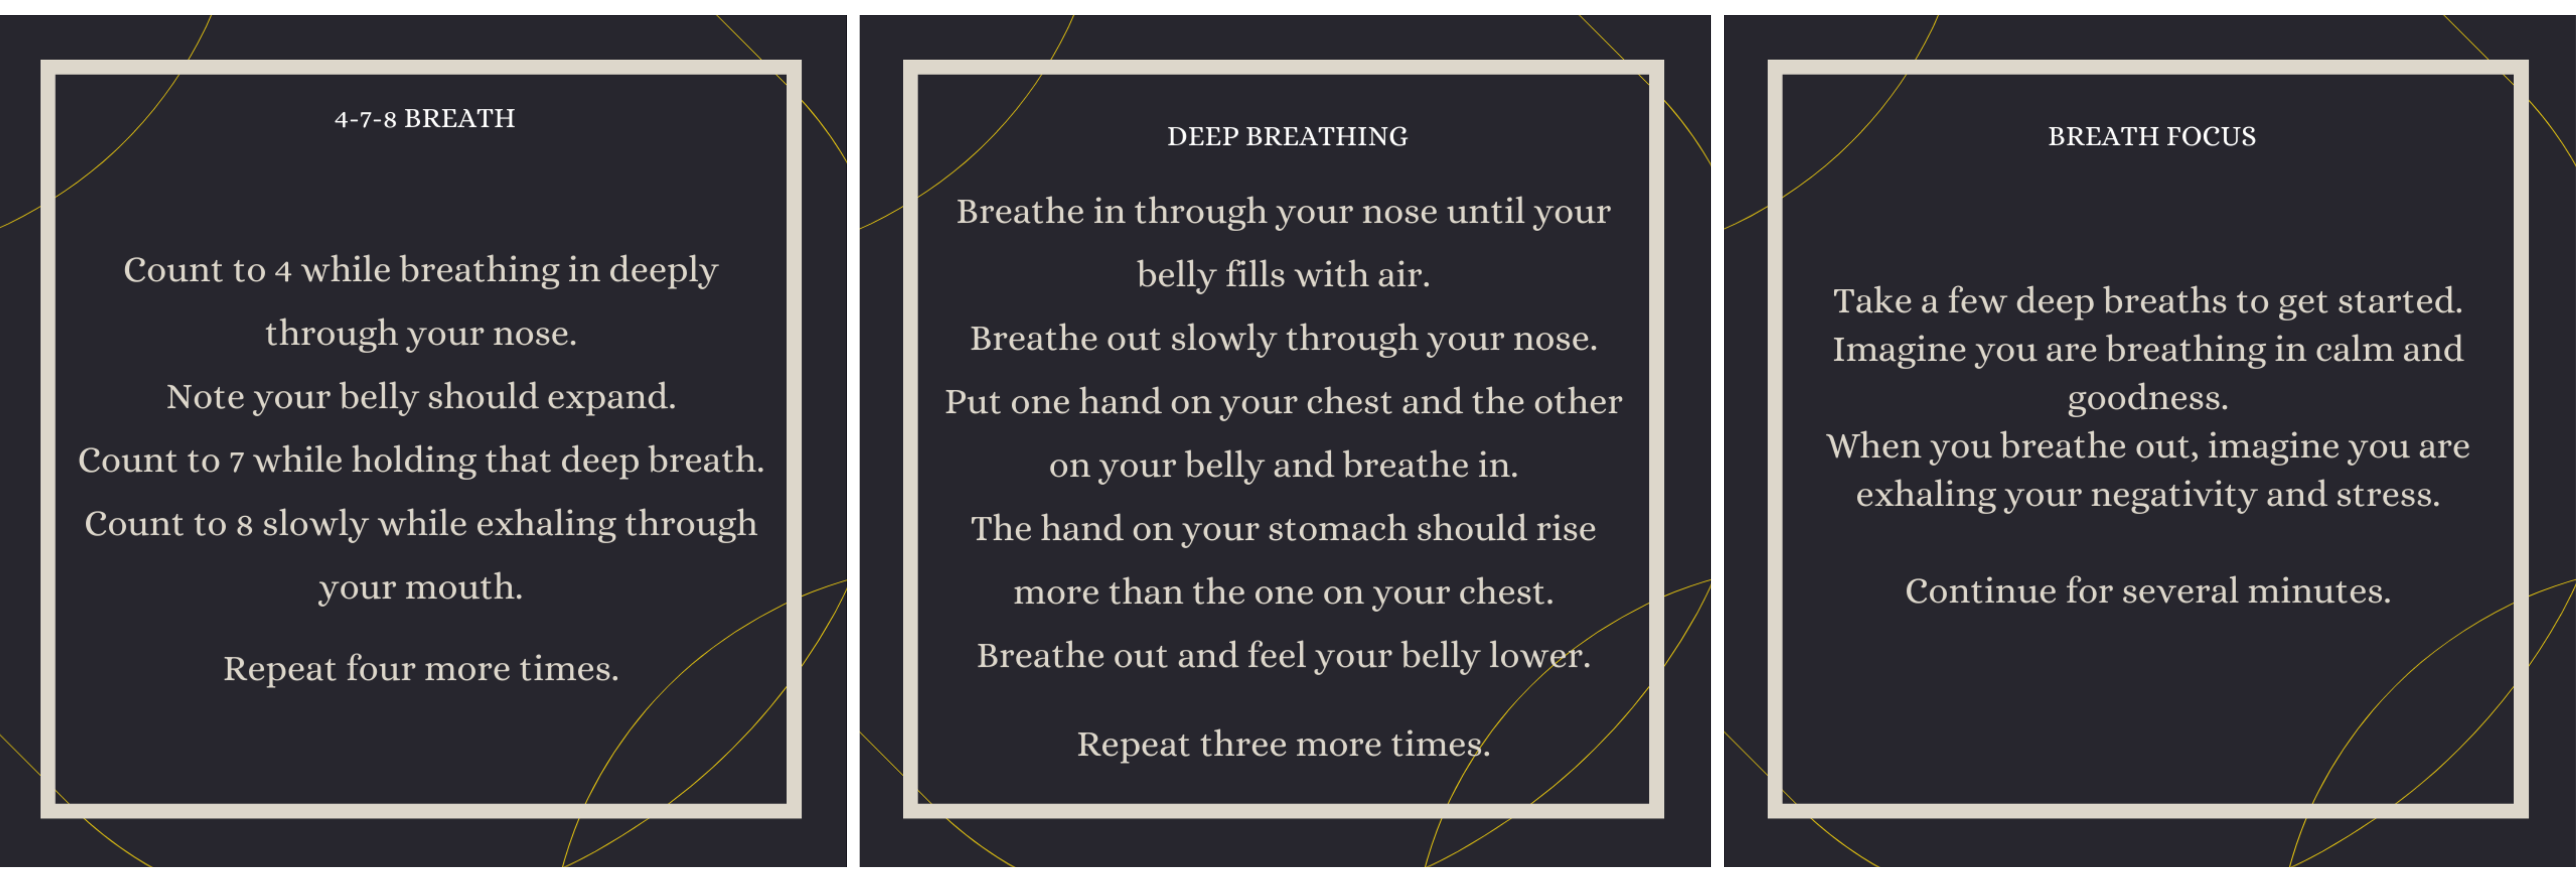 breathing exercises 